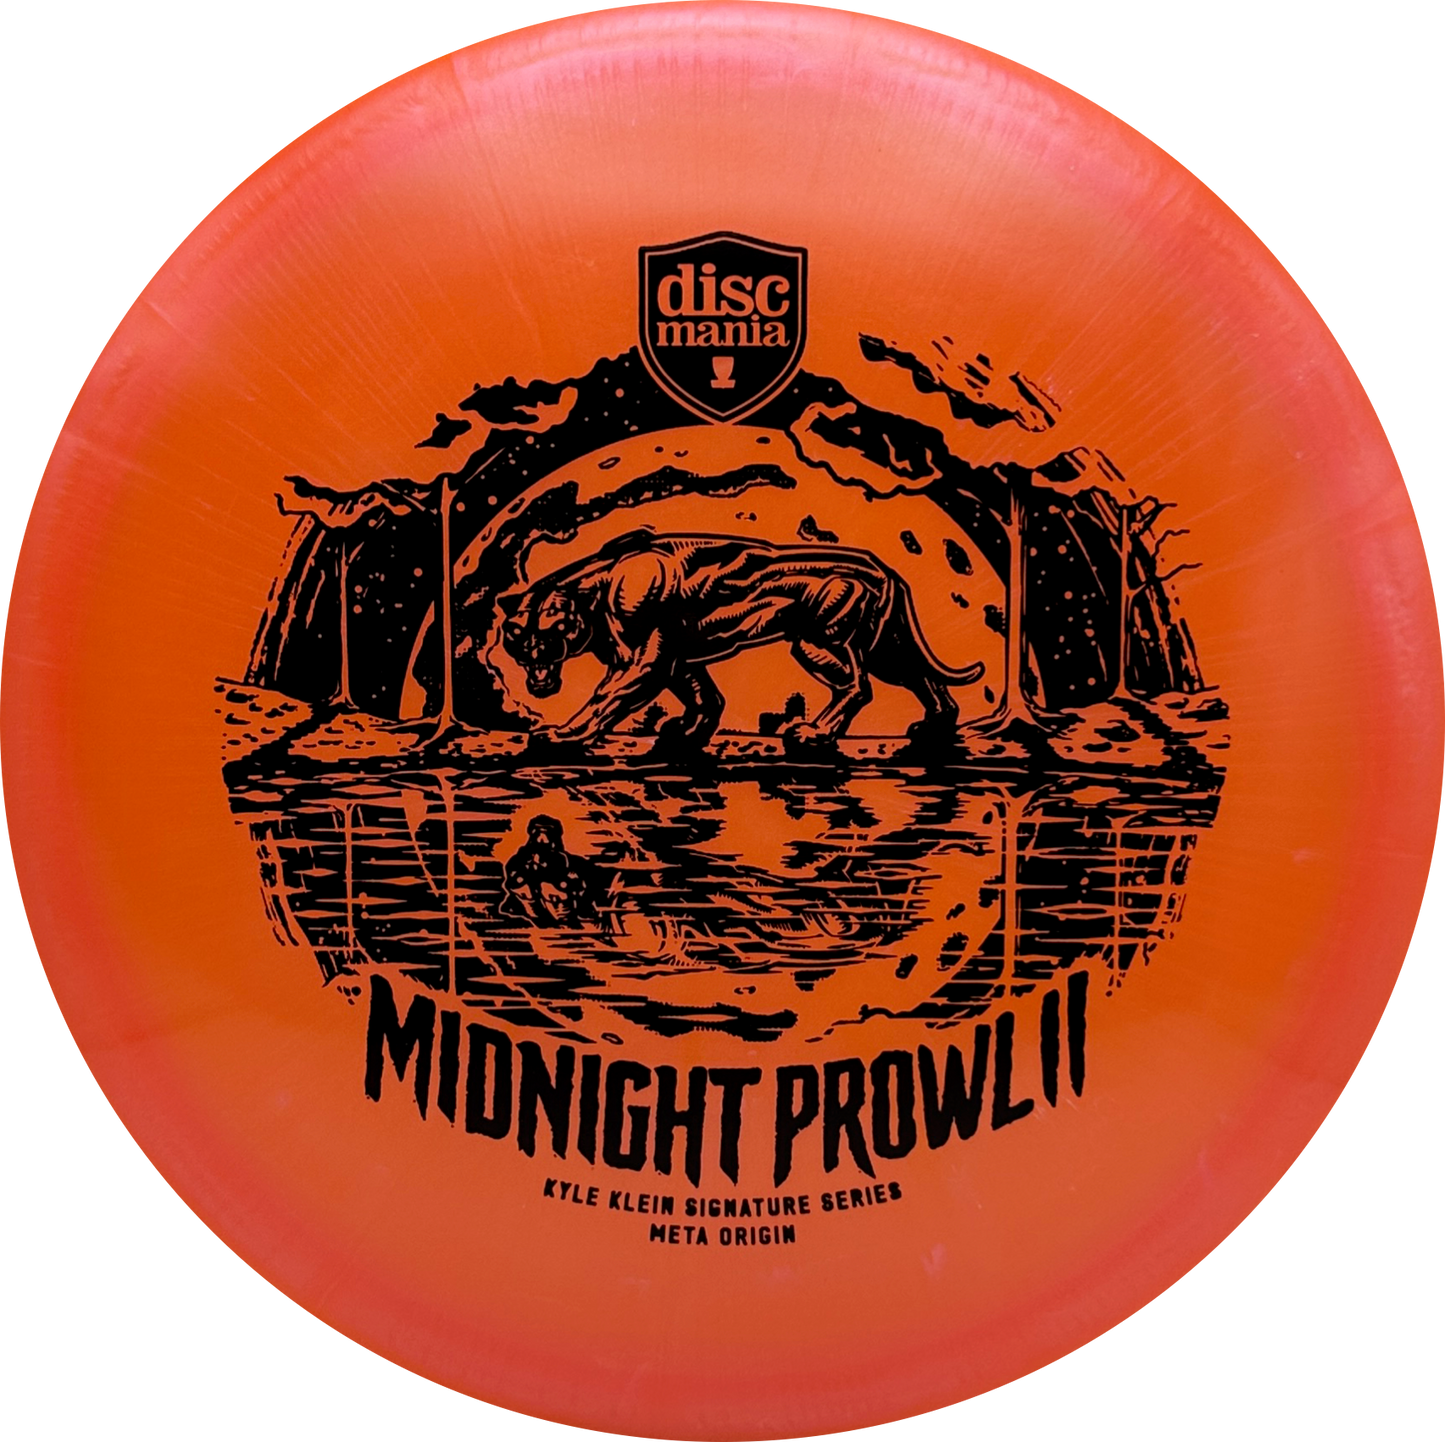 Discmania Midnight Prowl II